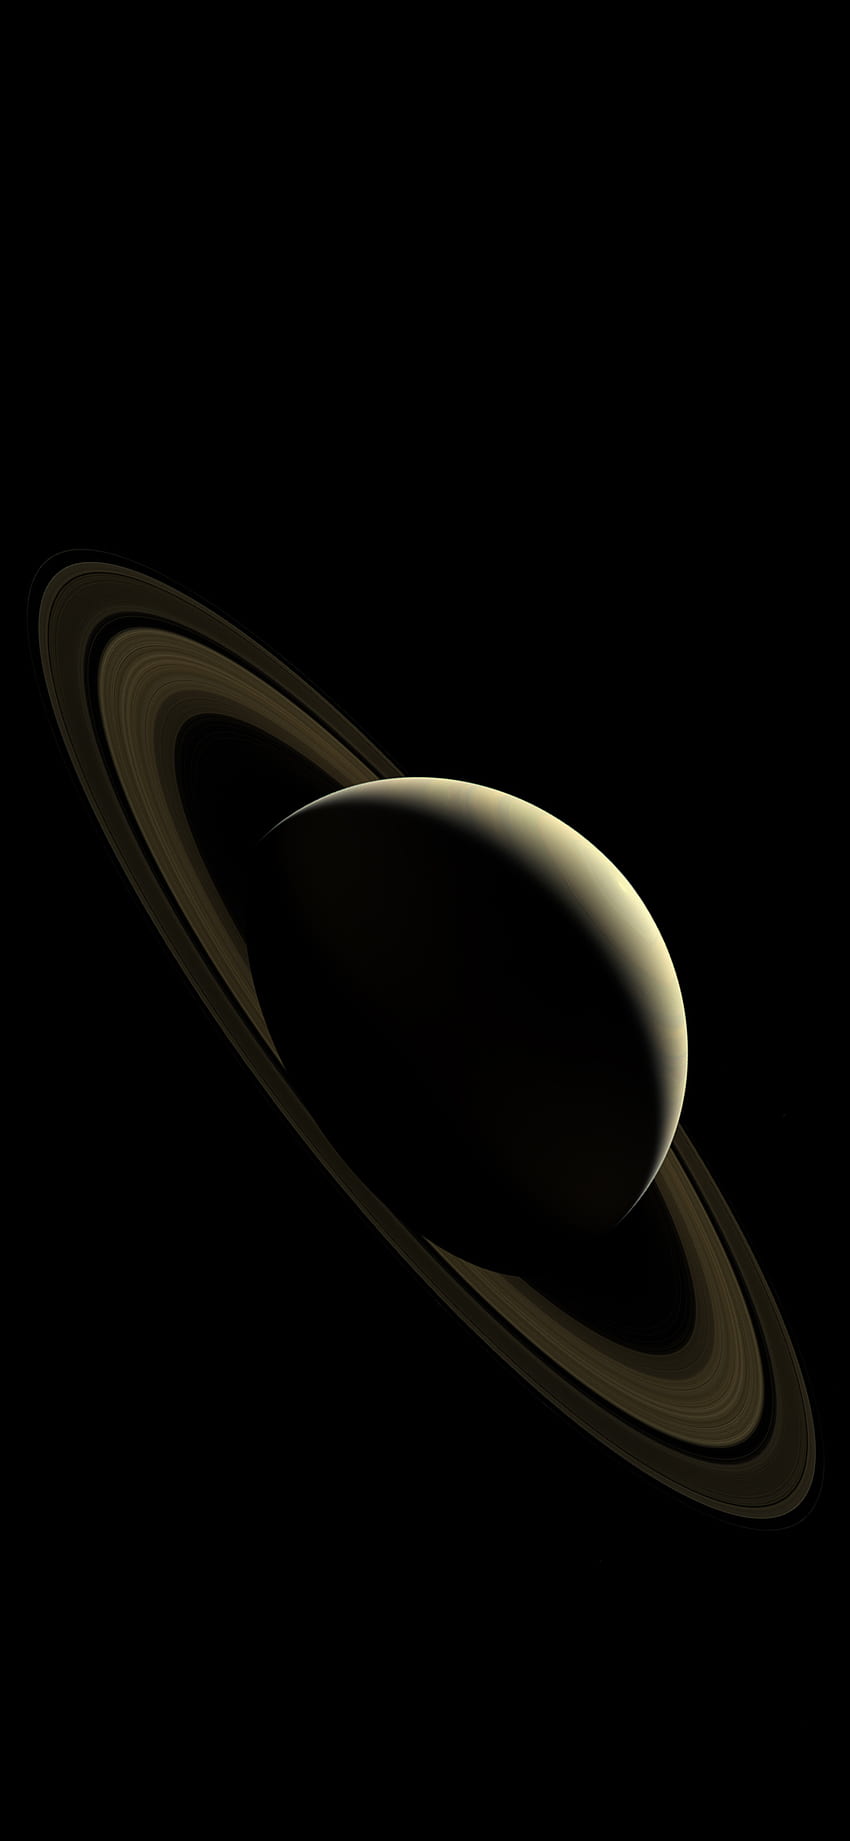 さらば土星 for iPhone X 土星 惑星 iPhone [] 、モバイル、タブレット用。 土星を探検。 サターン、ミスターサターン、カッシーニサターン、白黒サターン HD電話の壁紙